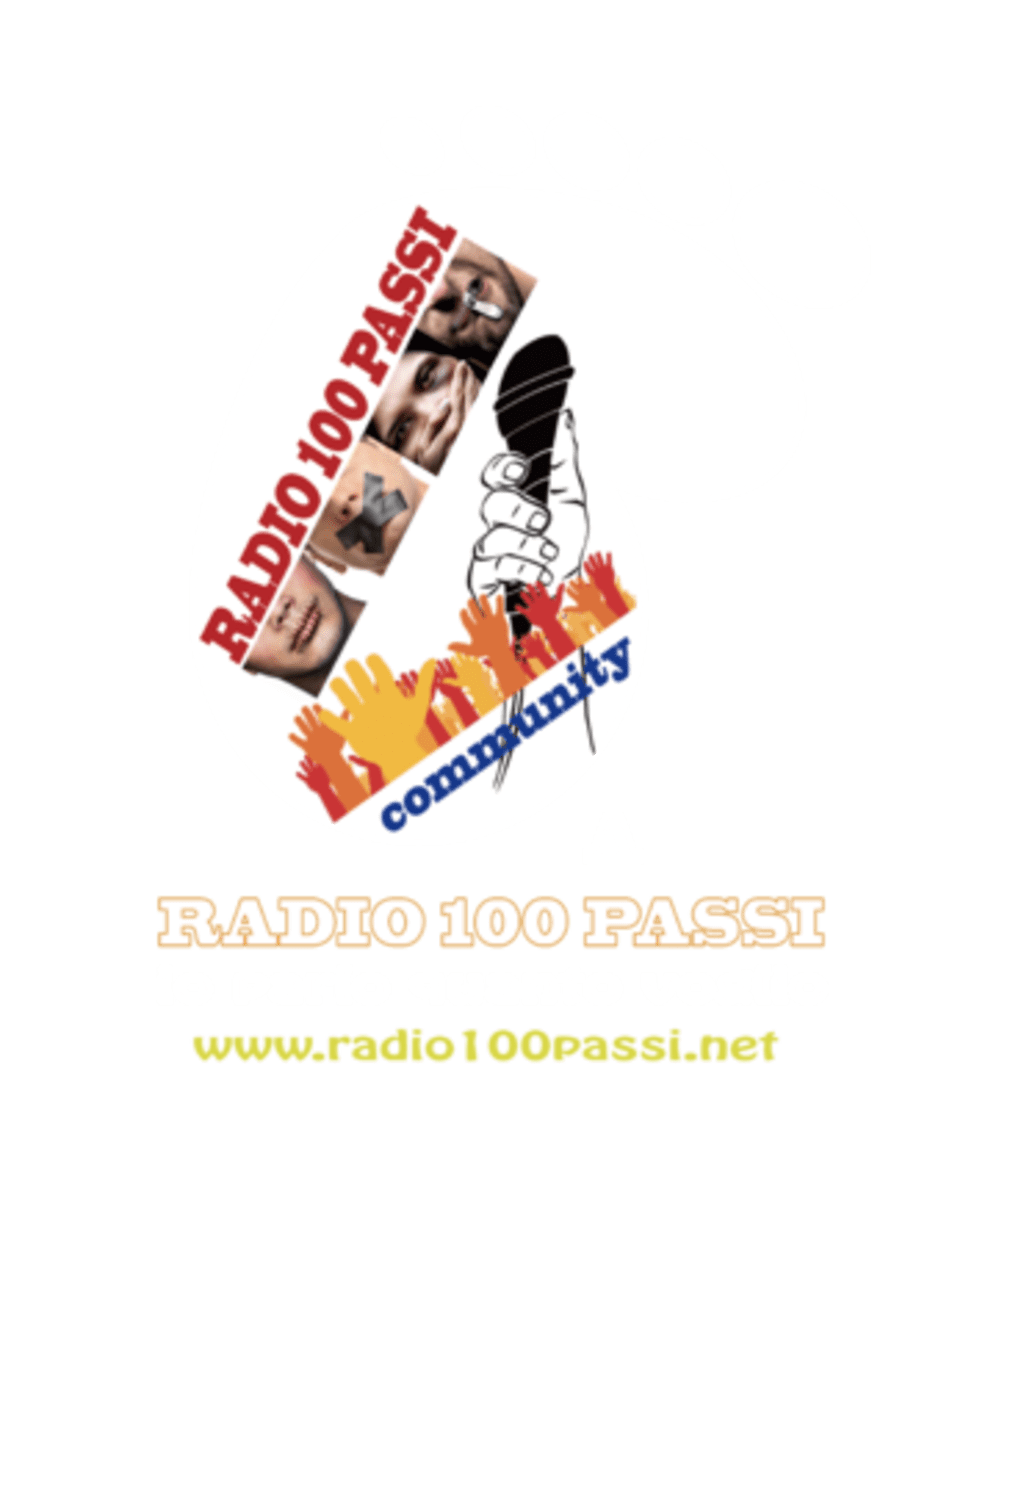 Community di Radio 100 Passi